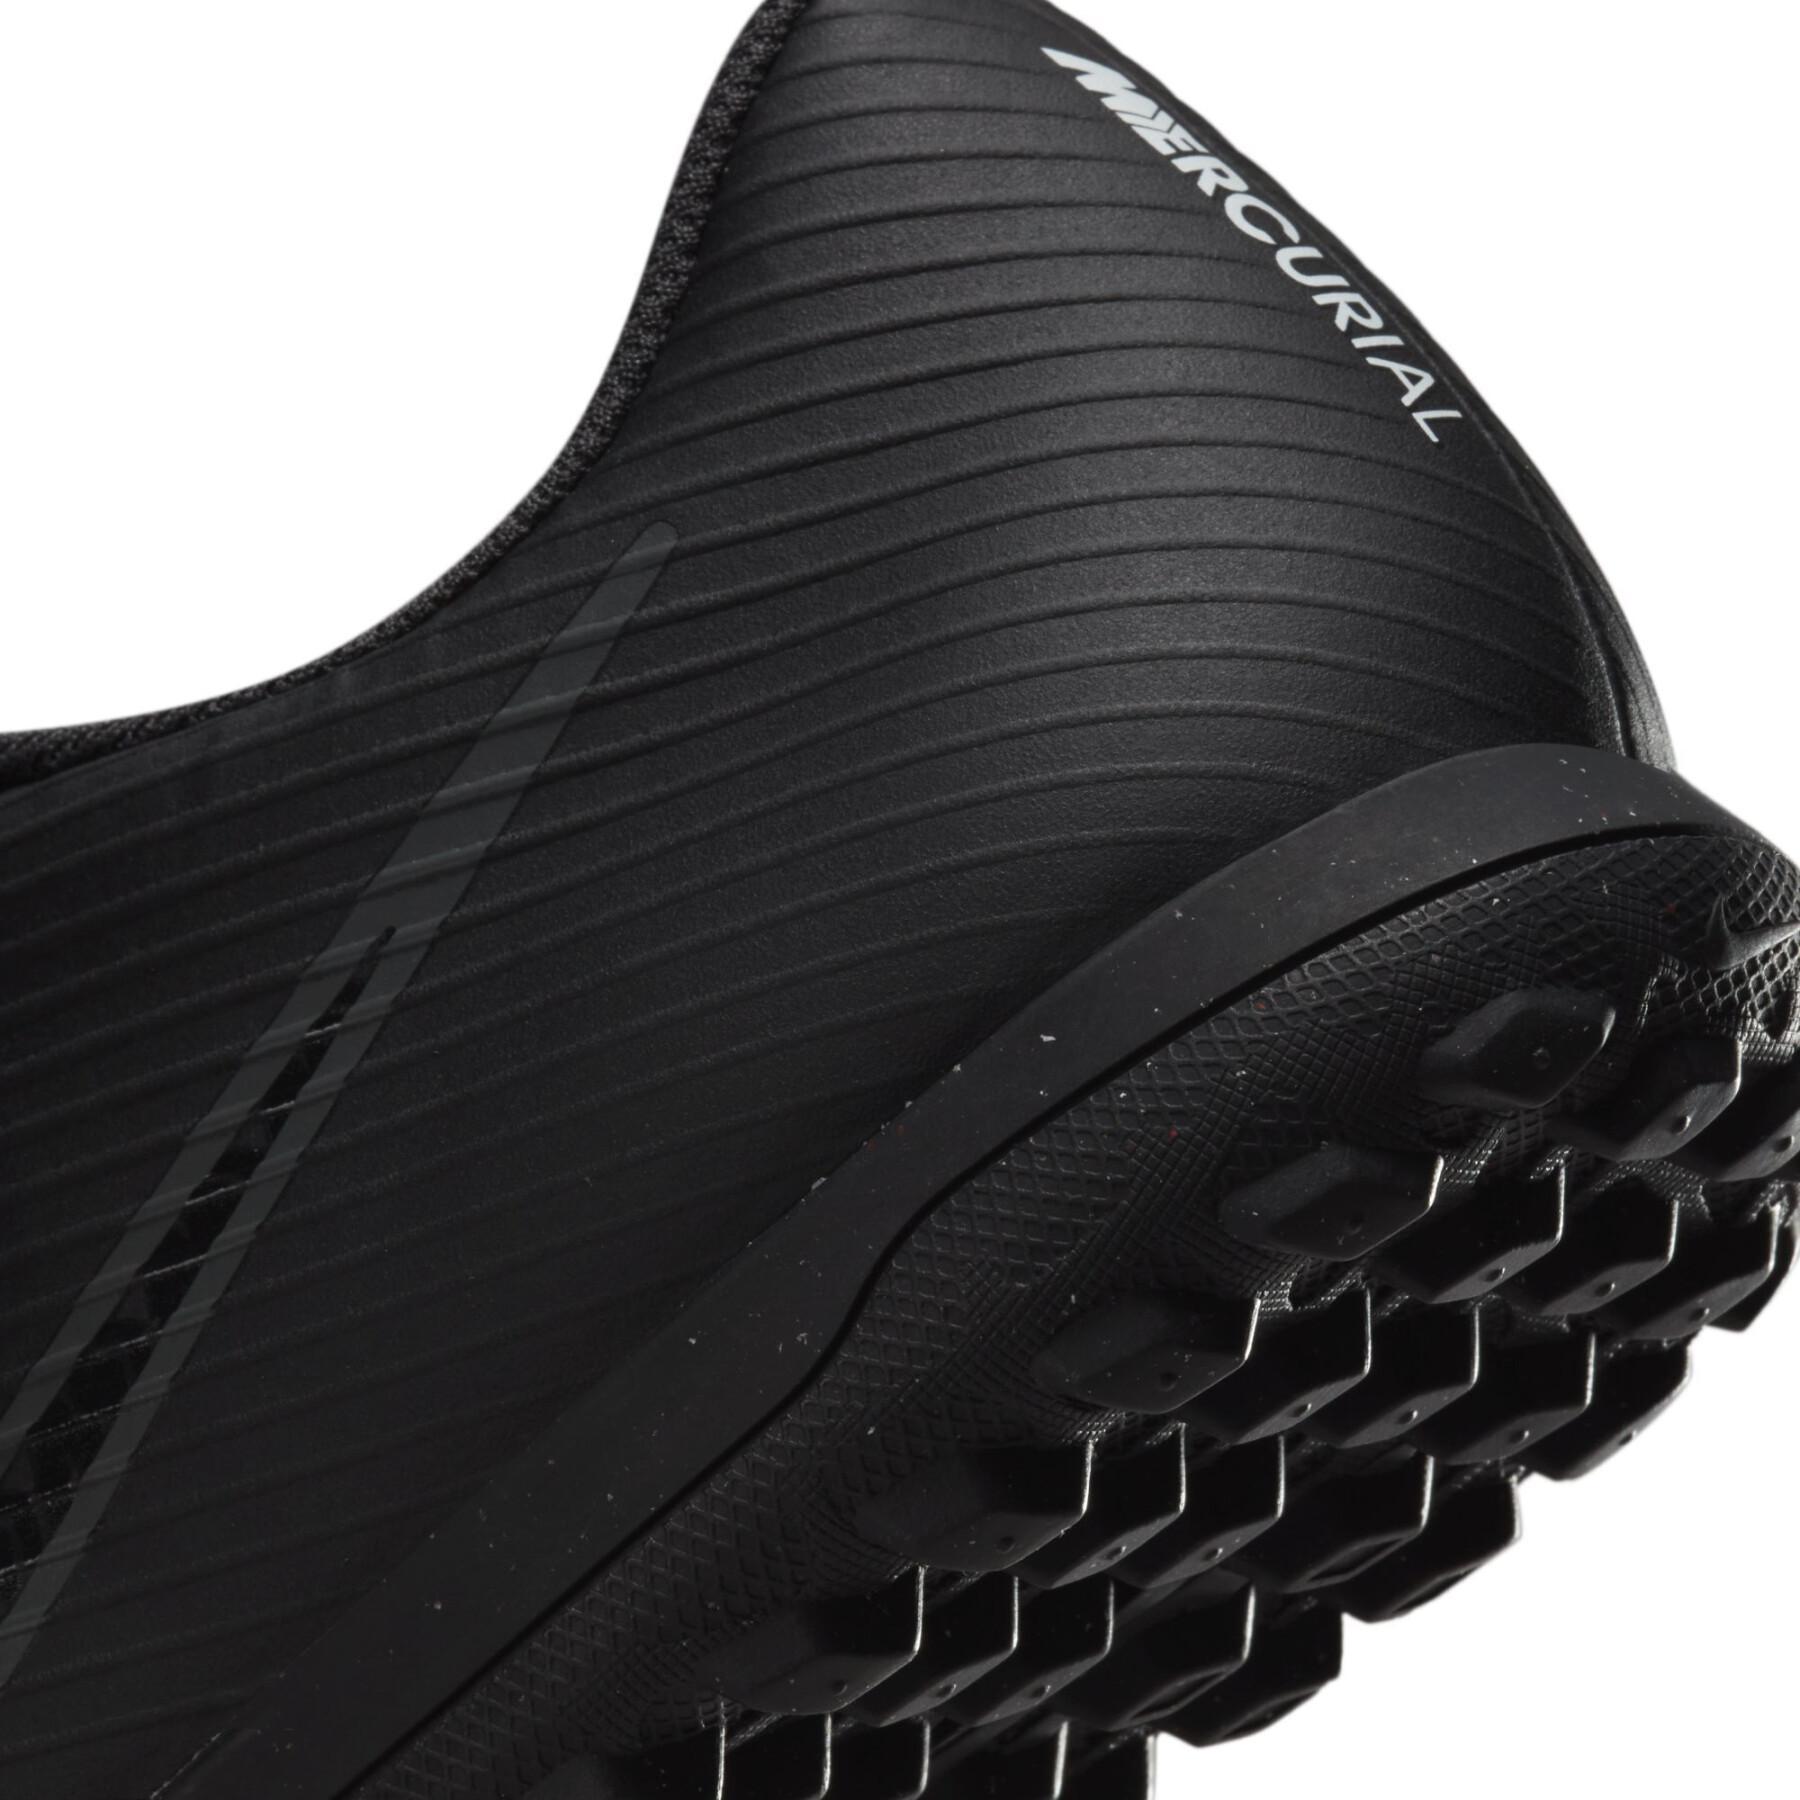 Sapatos de futebol Nike Mercurial Vapor 15 Club TF - Shadow Black Pack